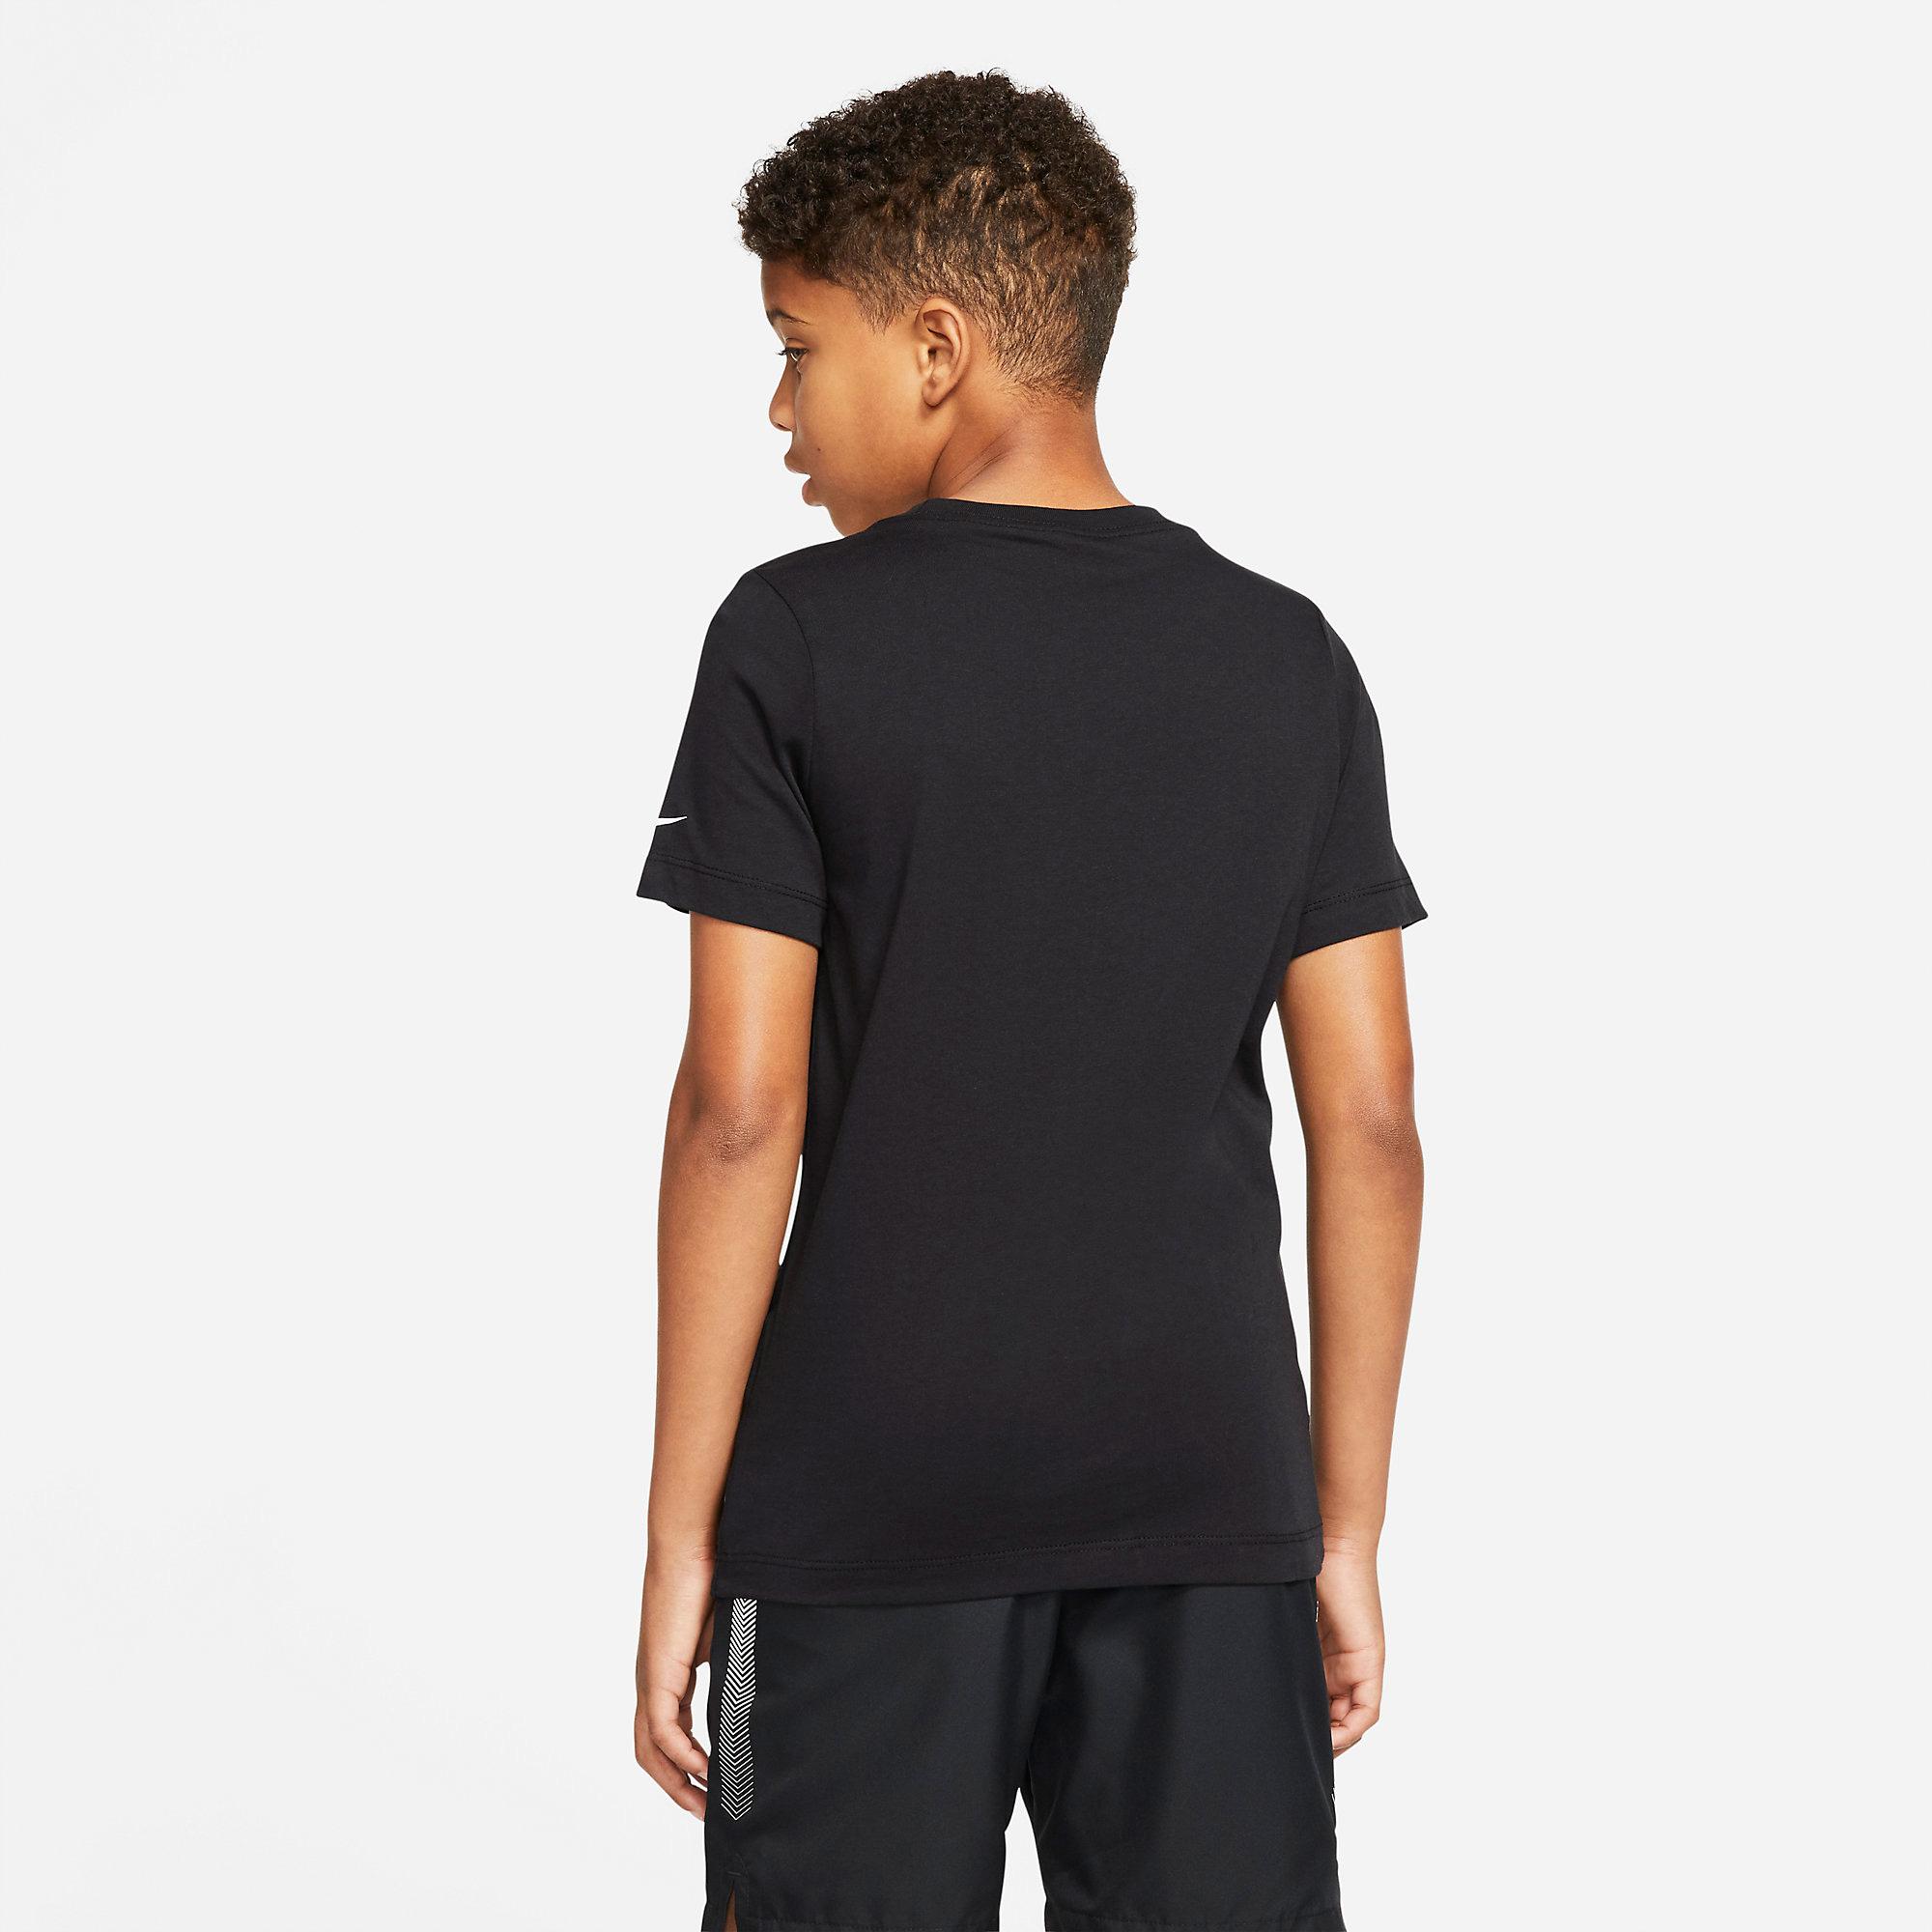 Nike Boys Rafa Graphic T-Shirt - Black - Tennisnuts.com